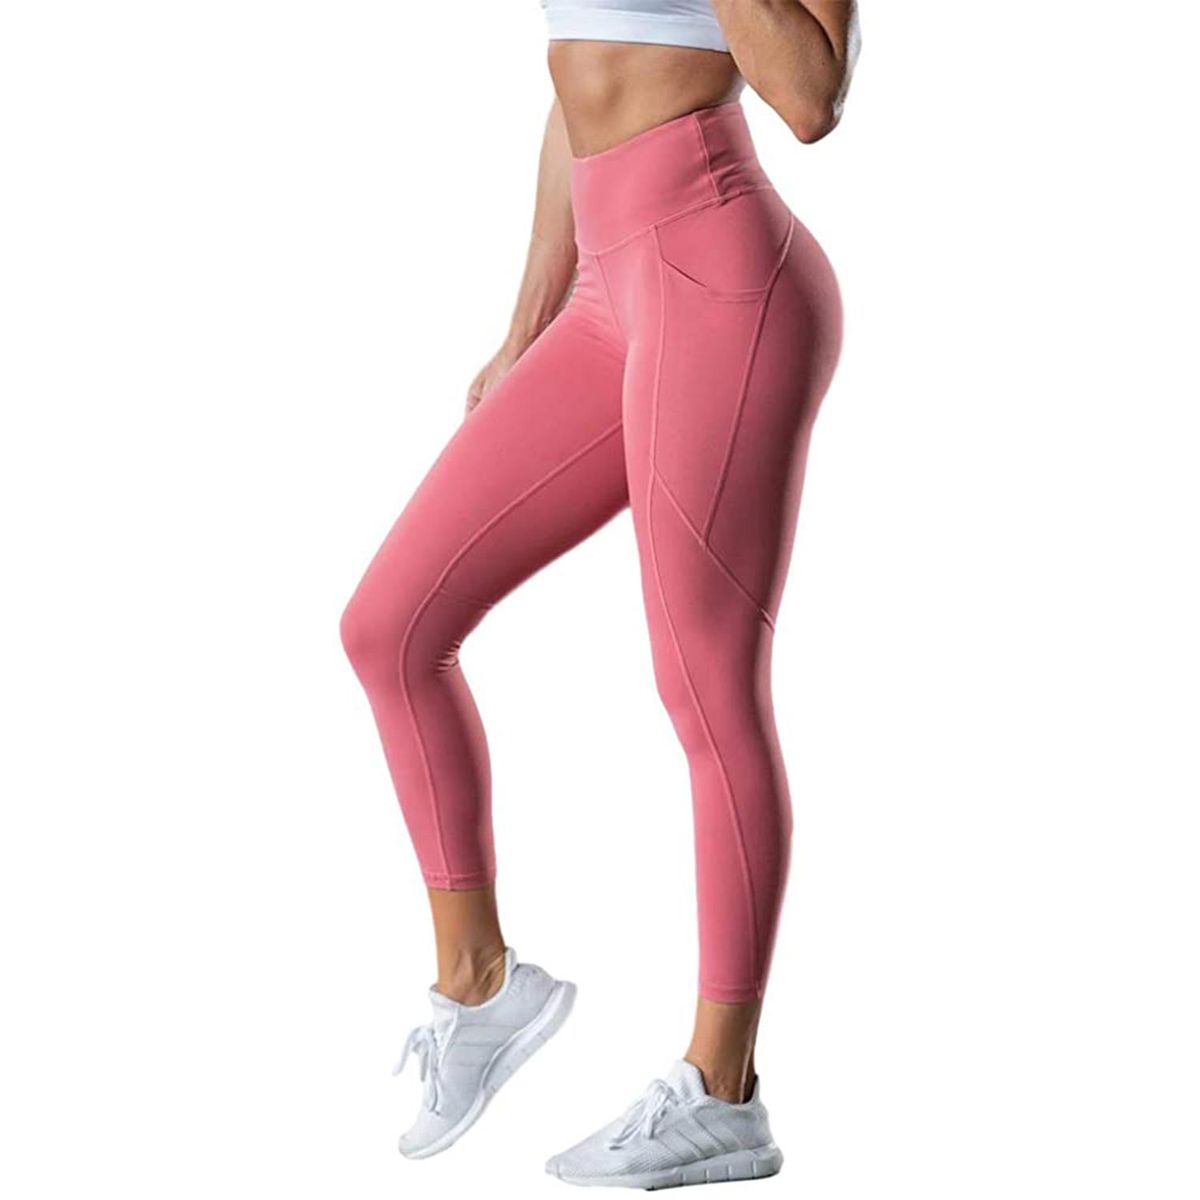 Seamless Butt Lifting Workout Leggings for Women